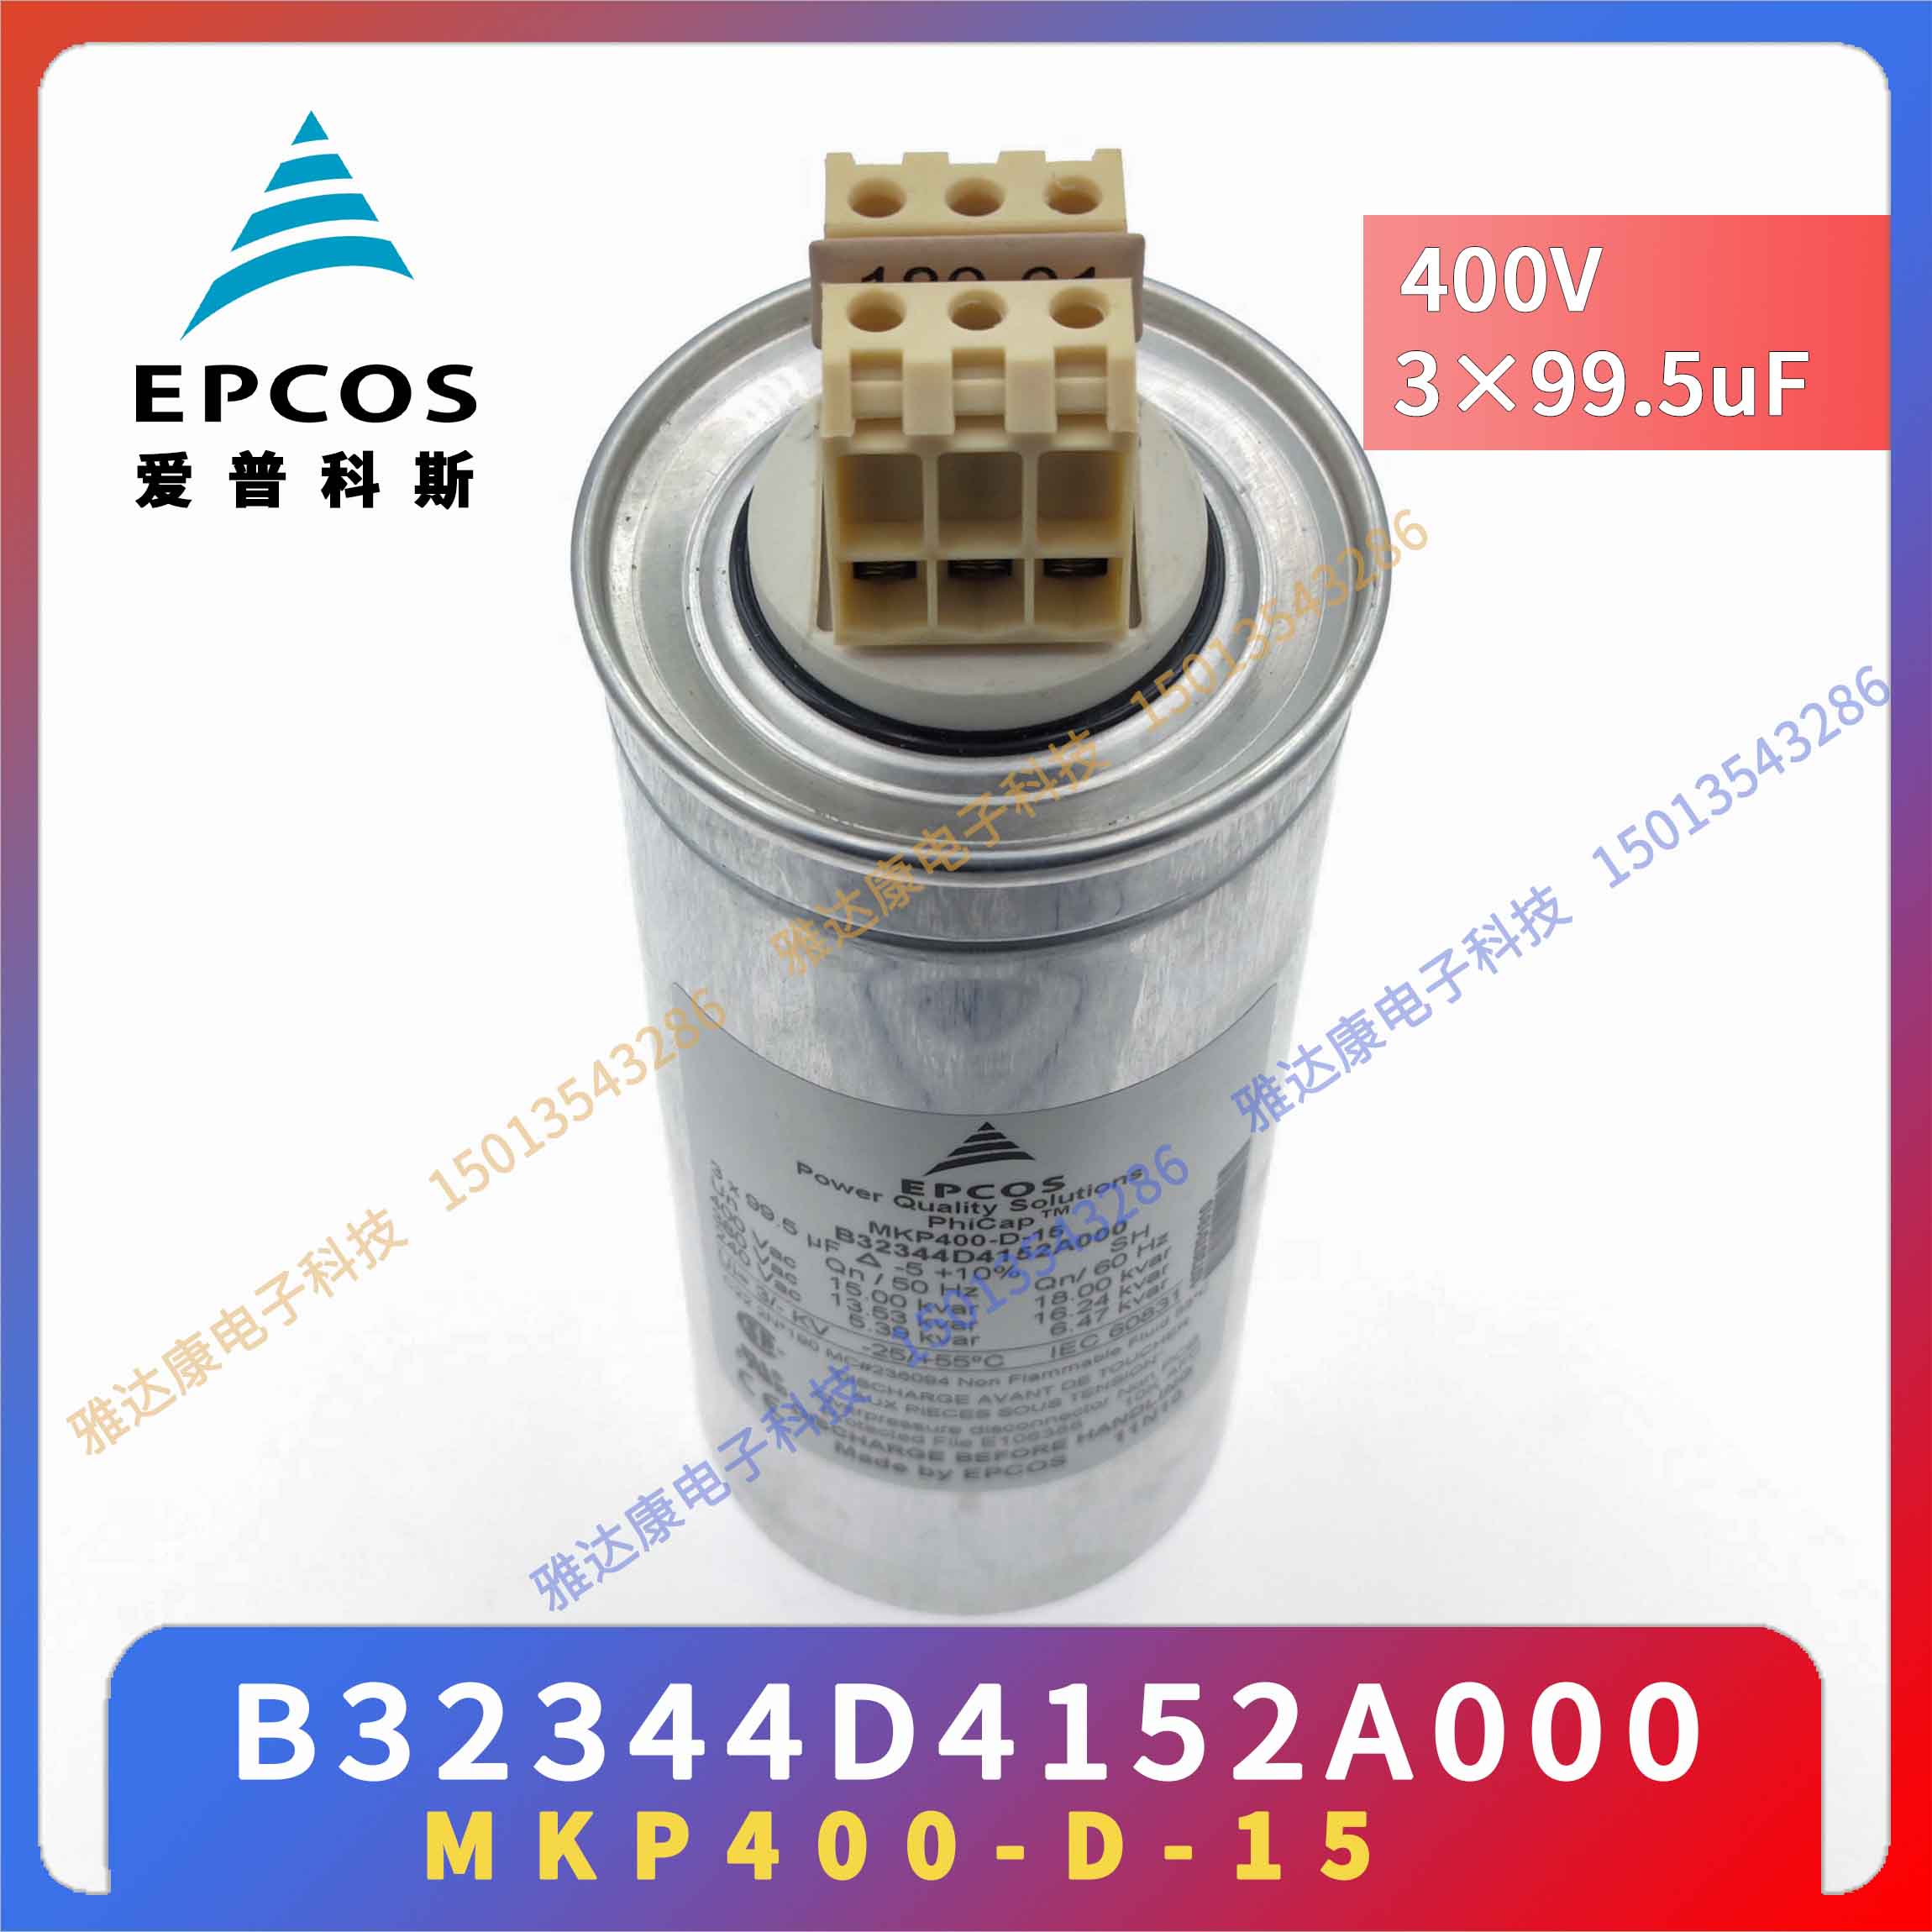 EPCOS电容器优势供应薄膜电容器MKK400 D-40-21 B25669A3796J375图片